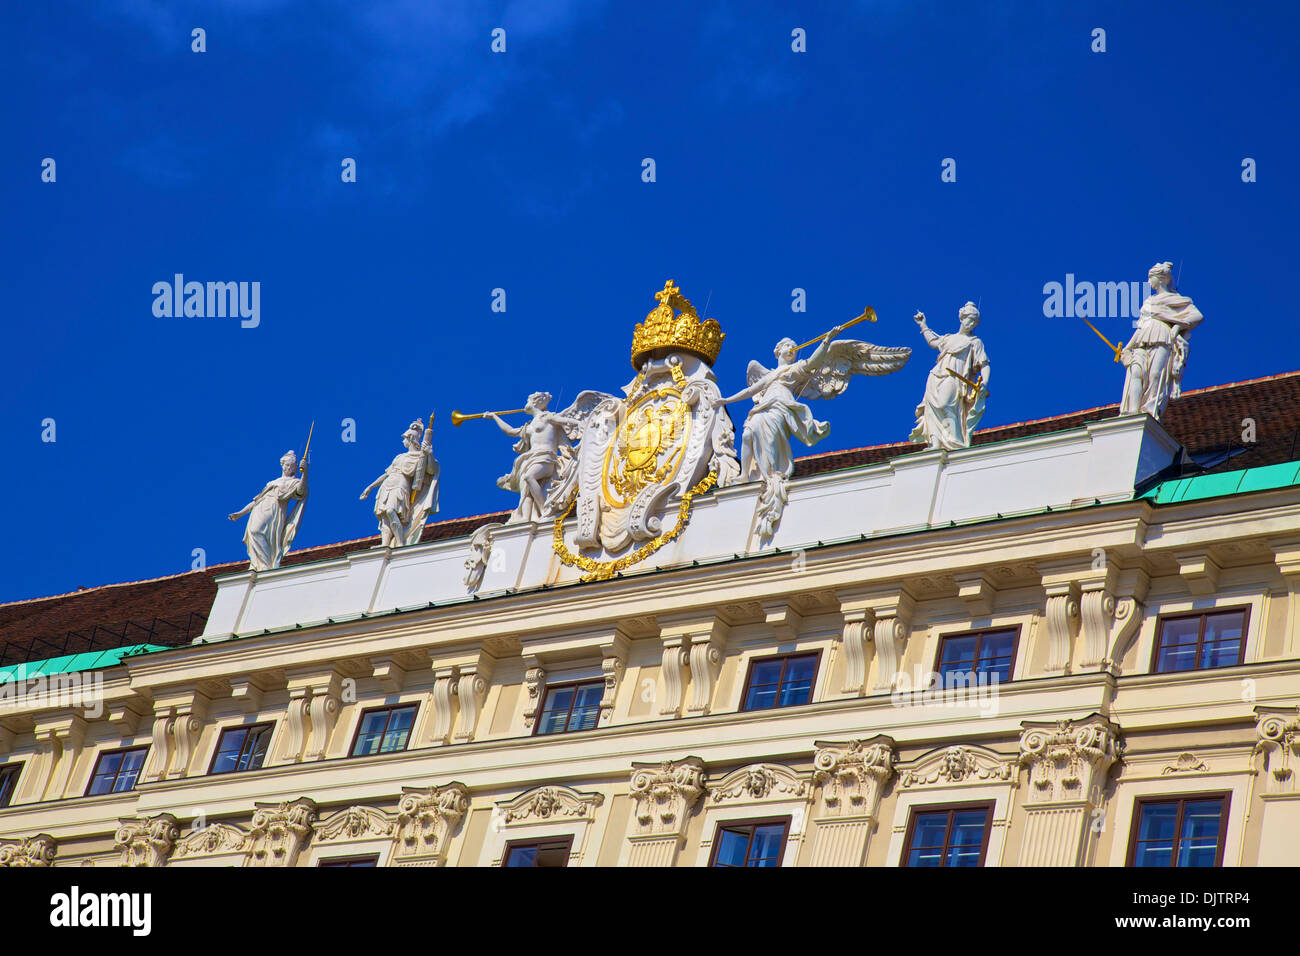 Extérieur de la Hofburg, Vienne, Autriche, Europe Centrale Banque D'Images